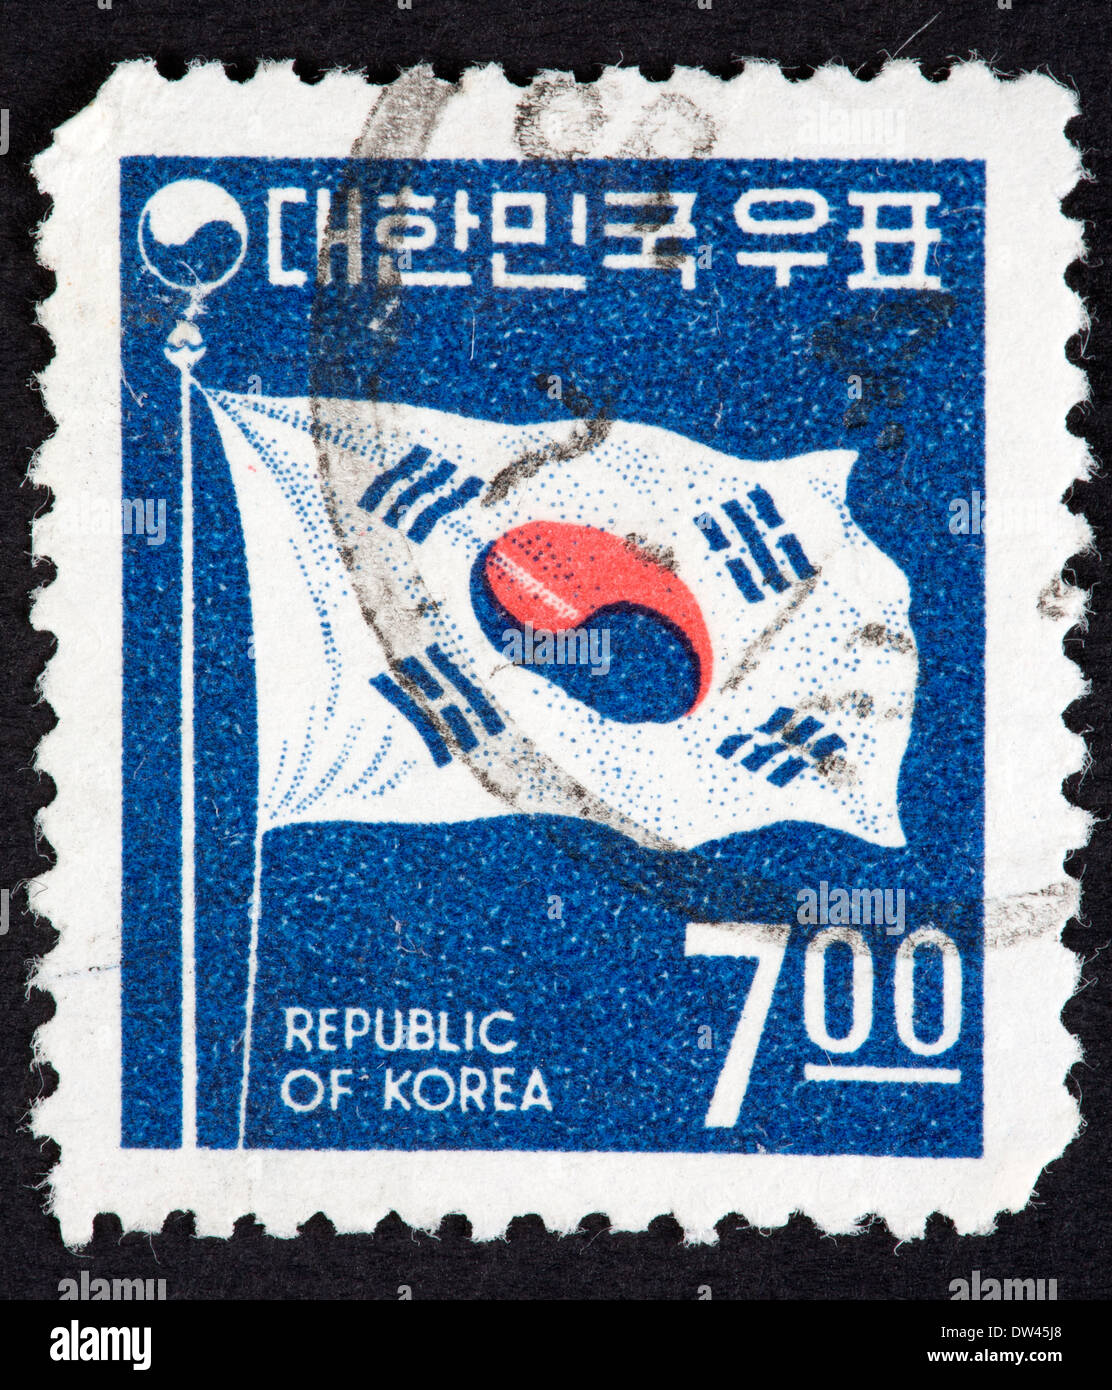 Korean postage stamp Stock Photo